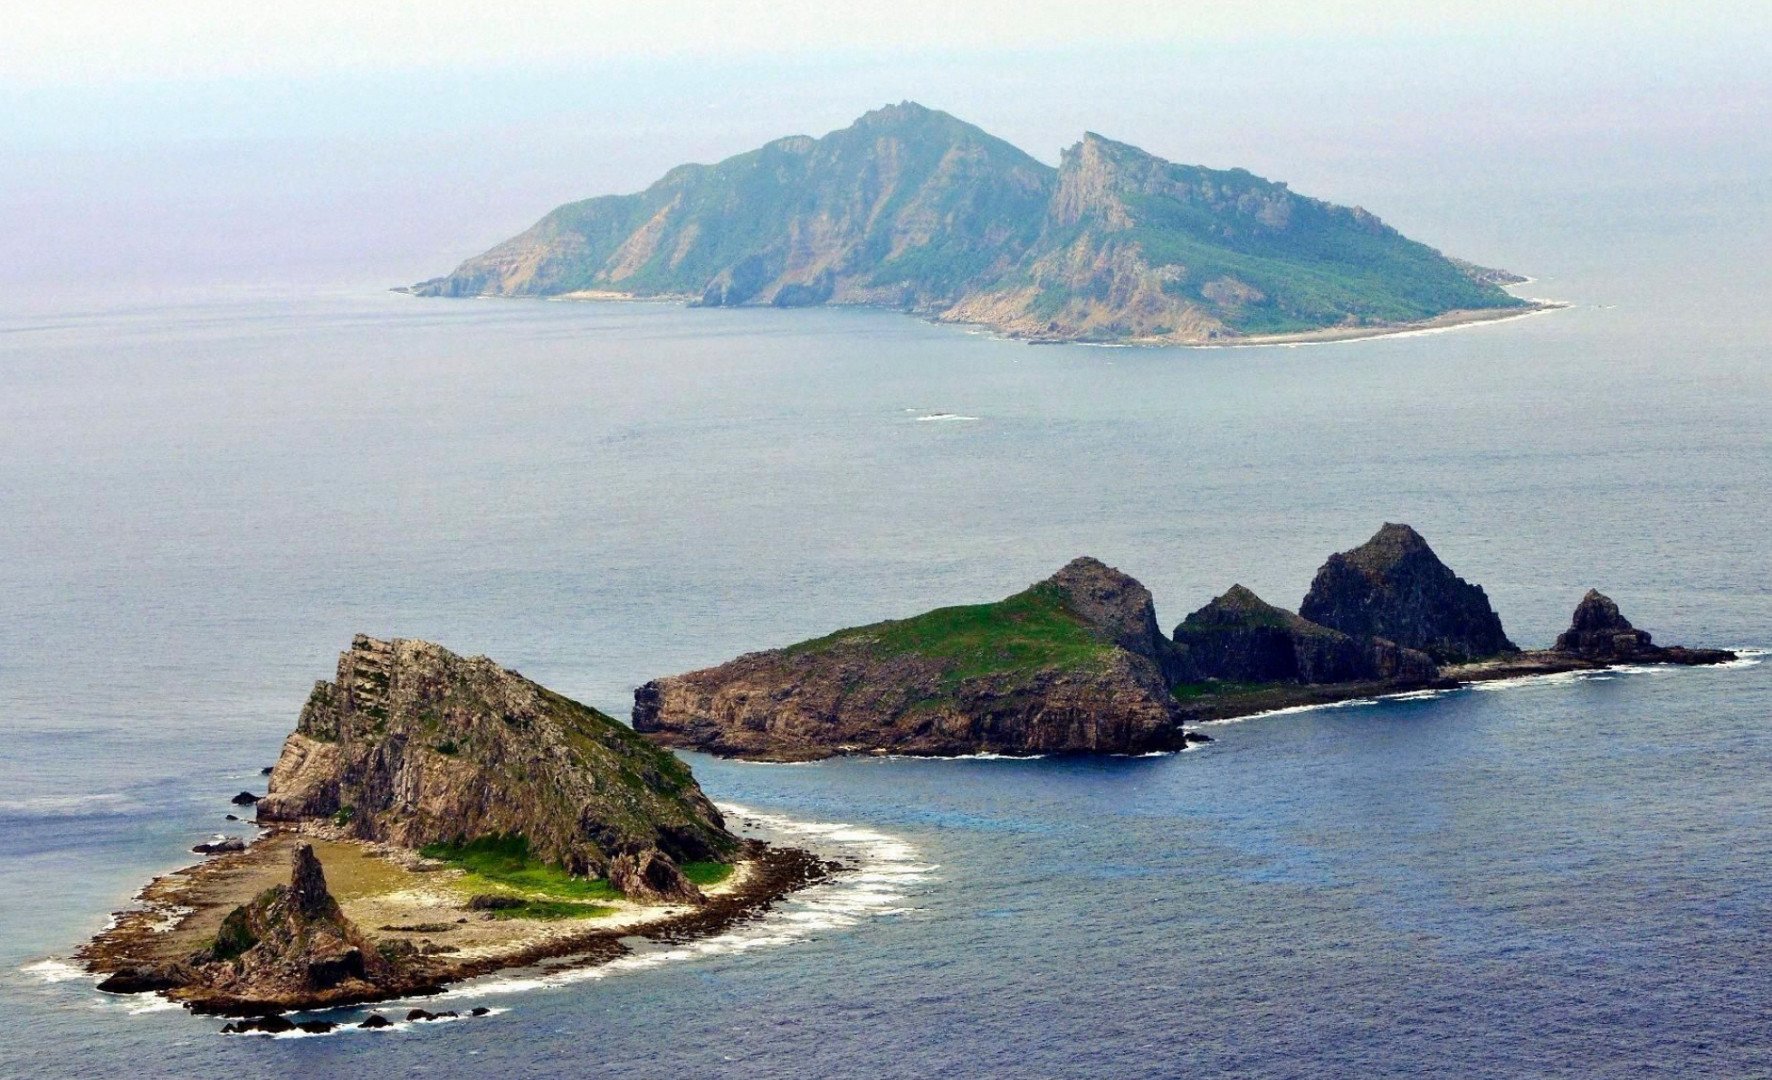 Пентагон готов защитить спорные острова в Японии